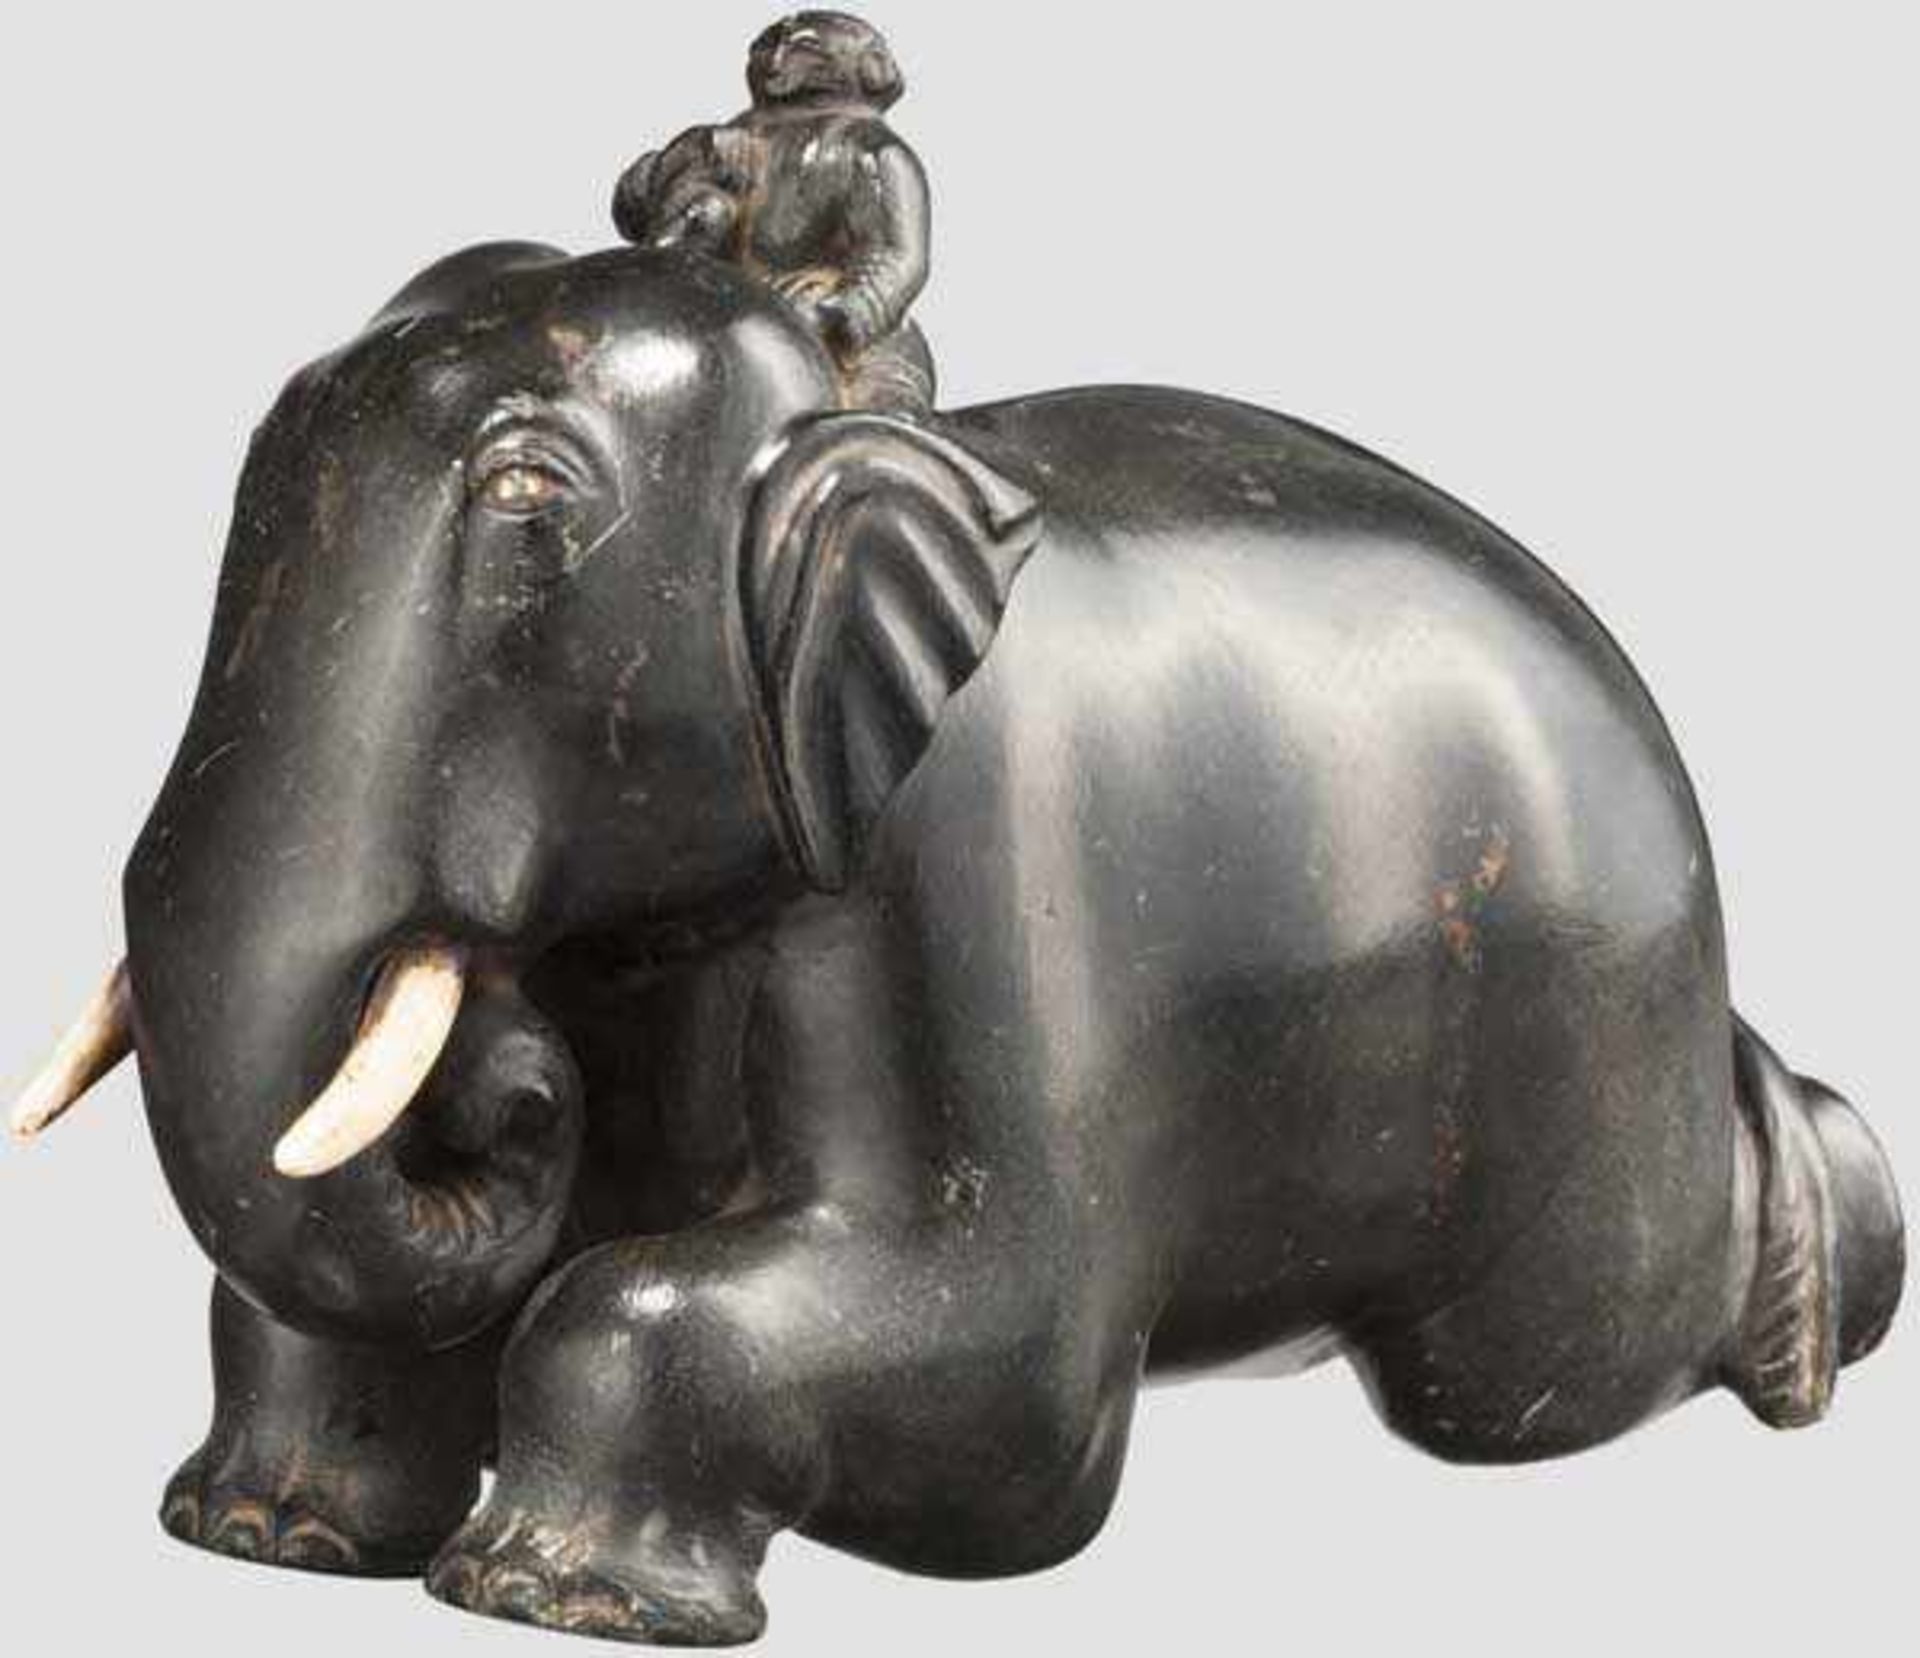 Geschnittener, liegender Elefant mit seinem Führer, China(?), 19. Jhdt. Dunkler, harter Stein, die